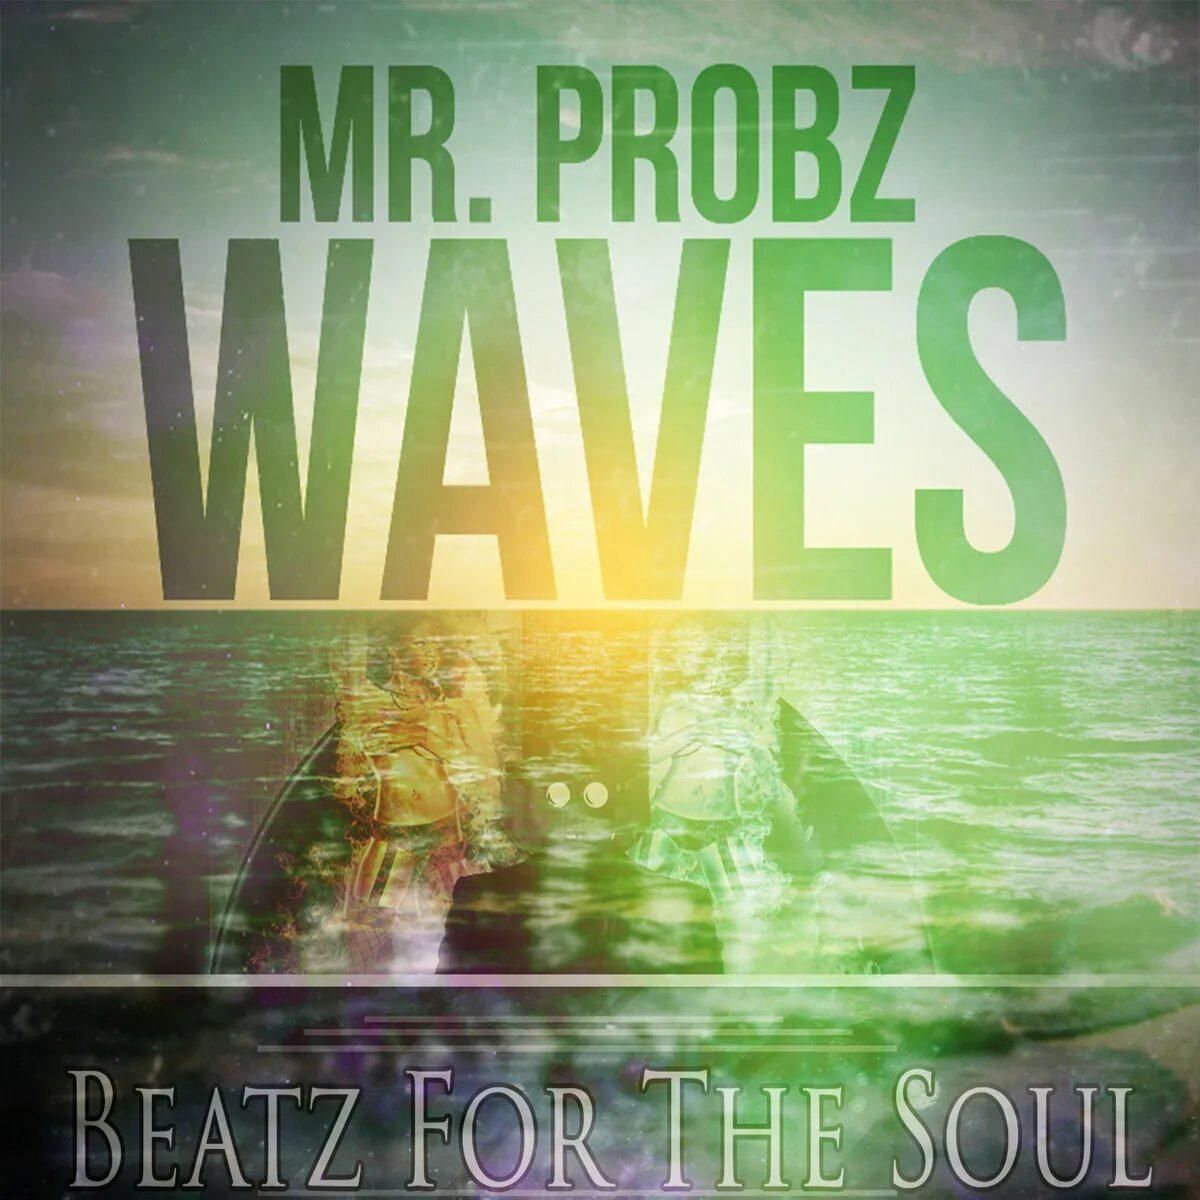 Mr wave. Mr Probz Waves. Waves Robin Schulz. Mr Probz Waves Robin Schulz. Mr Probz Waves Robin Schulz Remix.